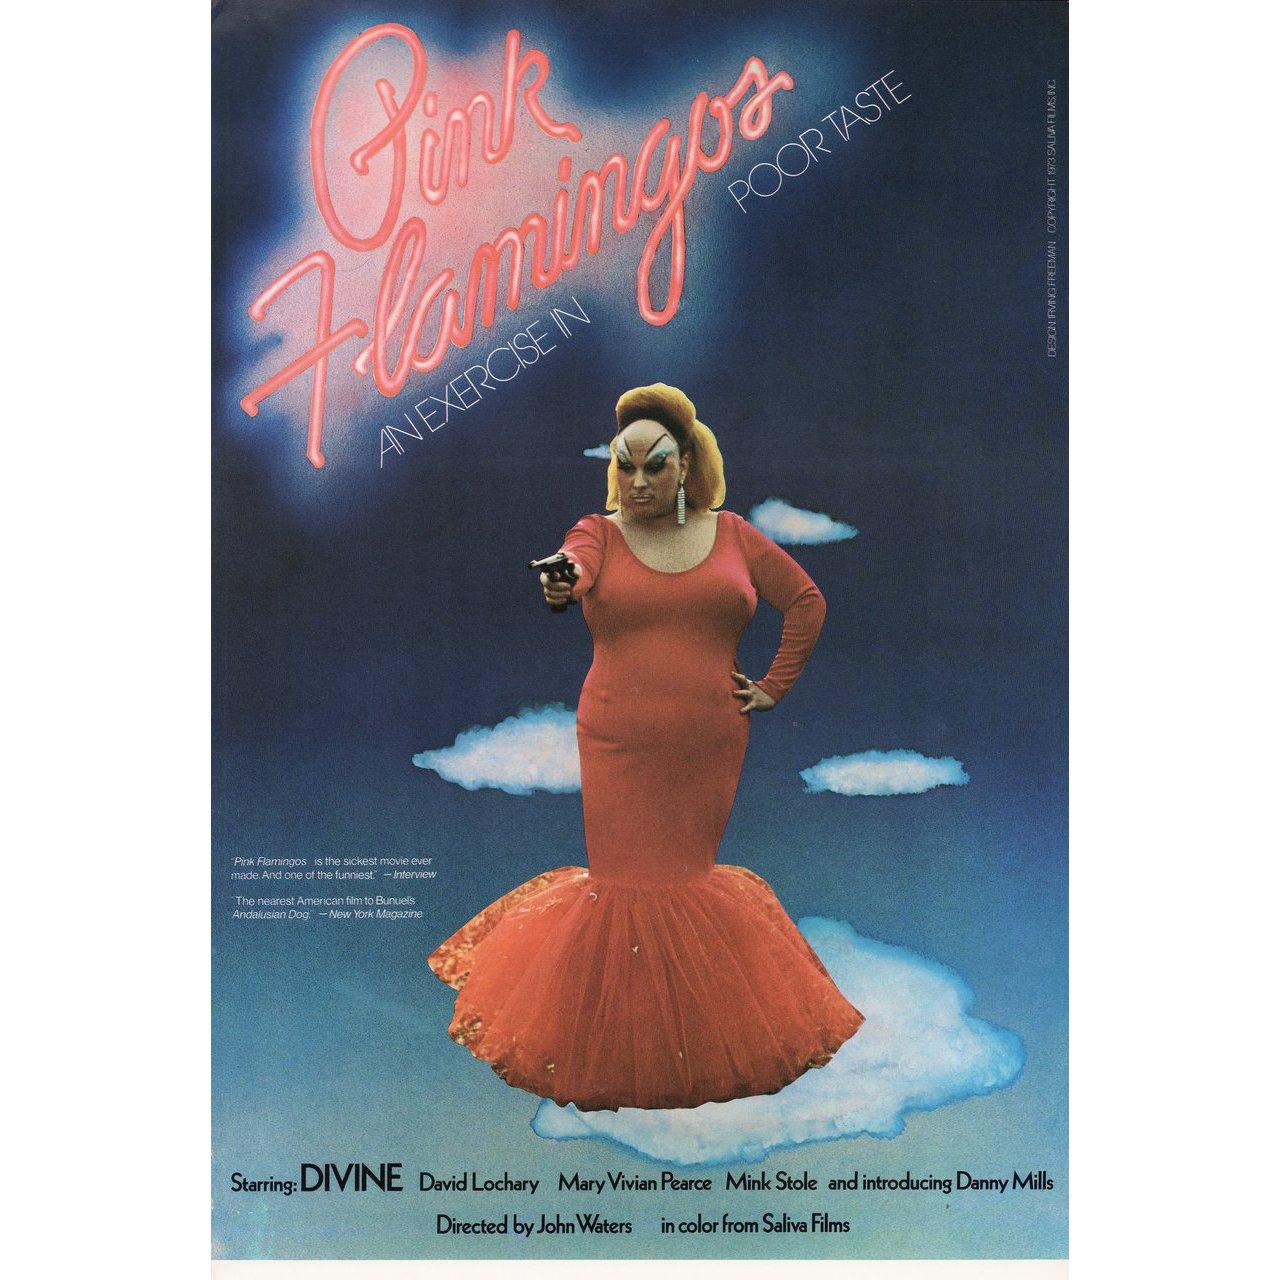 Mini affiche américaine originale de 1973 réalisée par Irving Freeman pour la première sortie en salles aux États-Unis du film Pink Flamingos réalisé par John Waters avec Divine / David Lochary / Mary Vivian Pearce / Mink Stole. Très bon état,